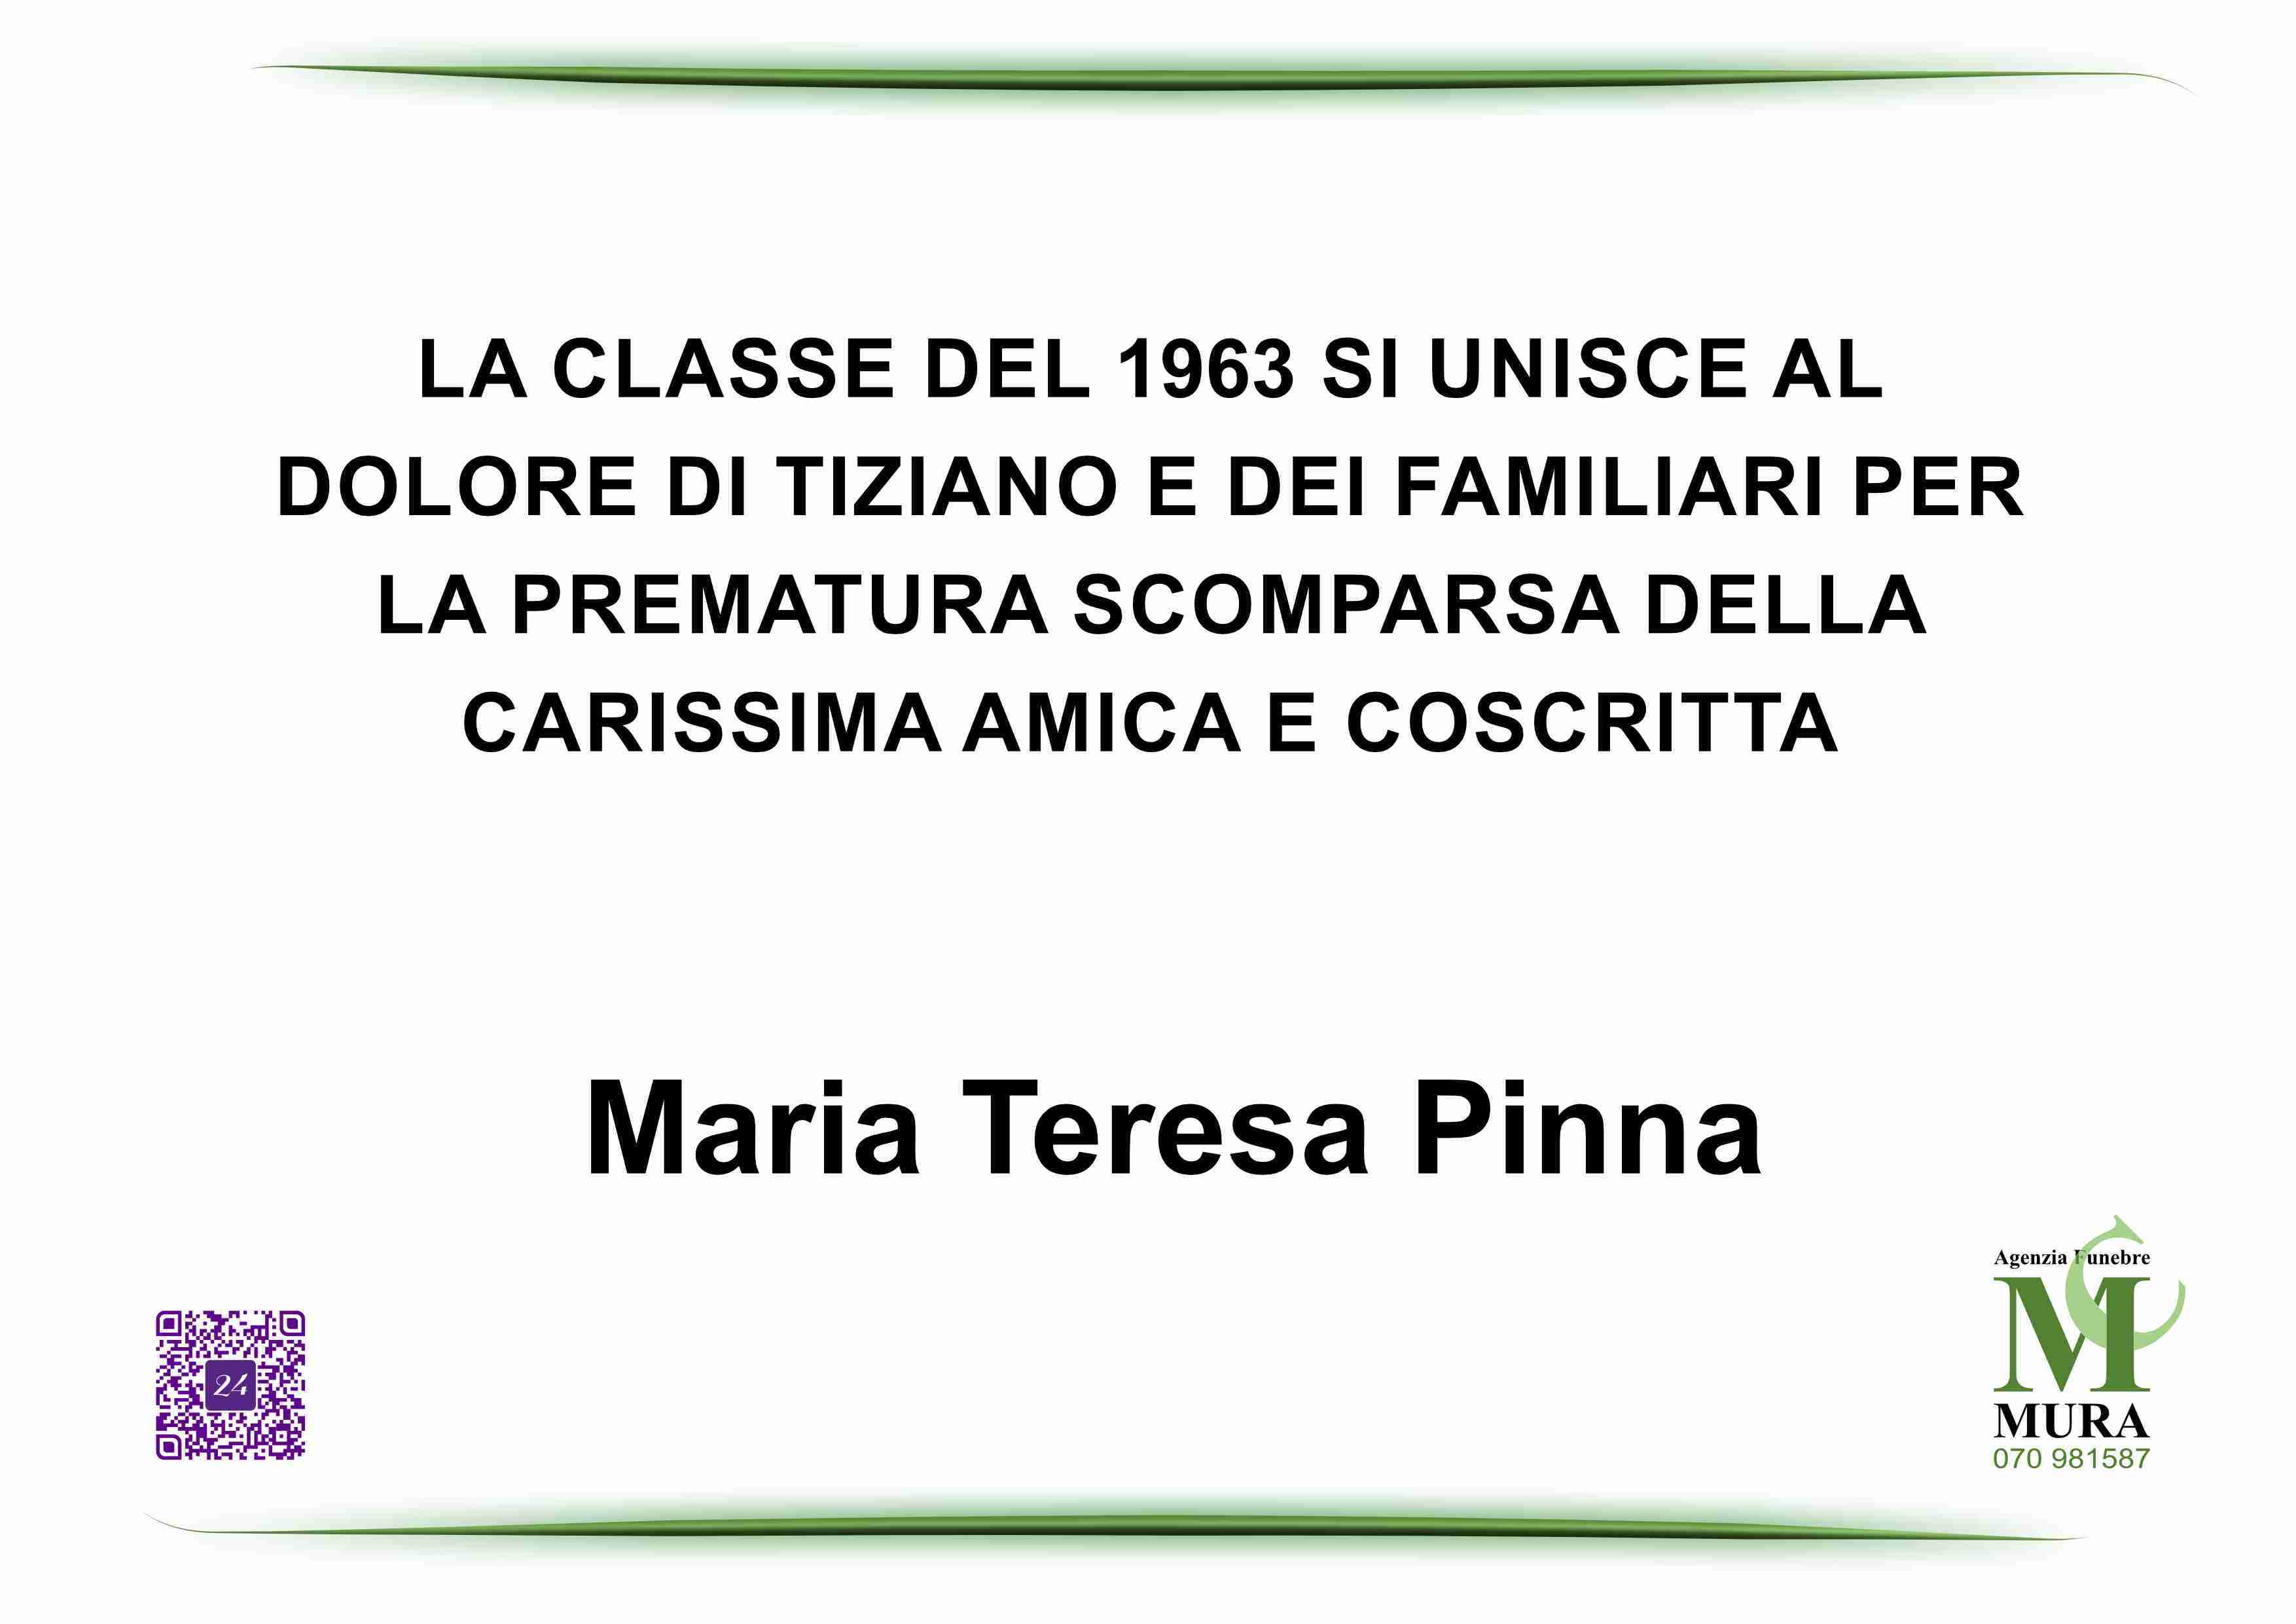 Maria Teresa Pinna